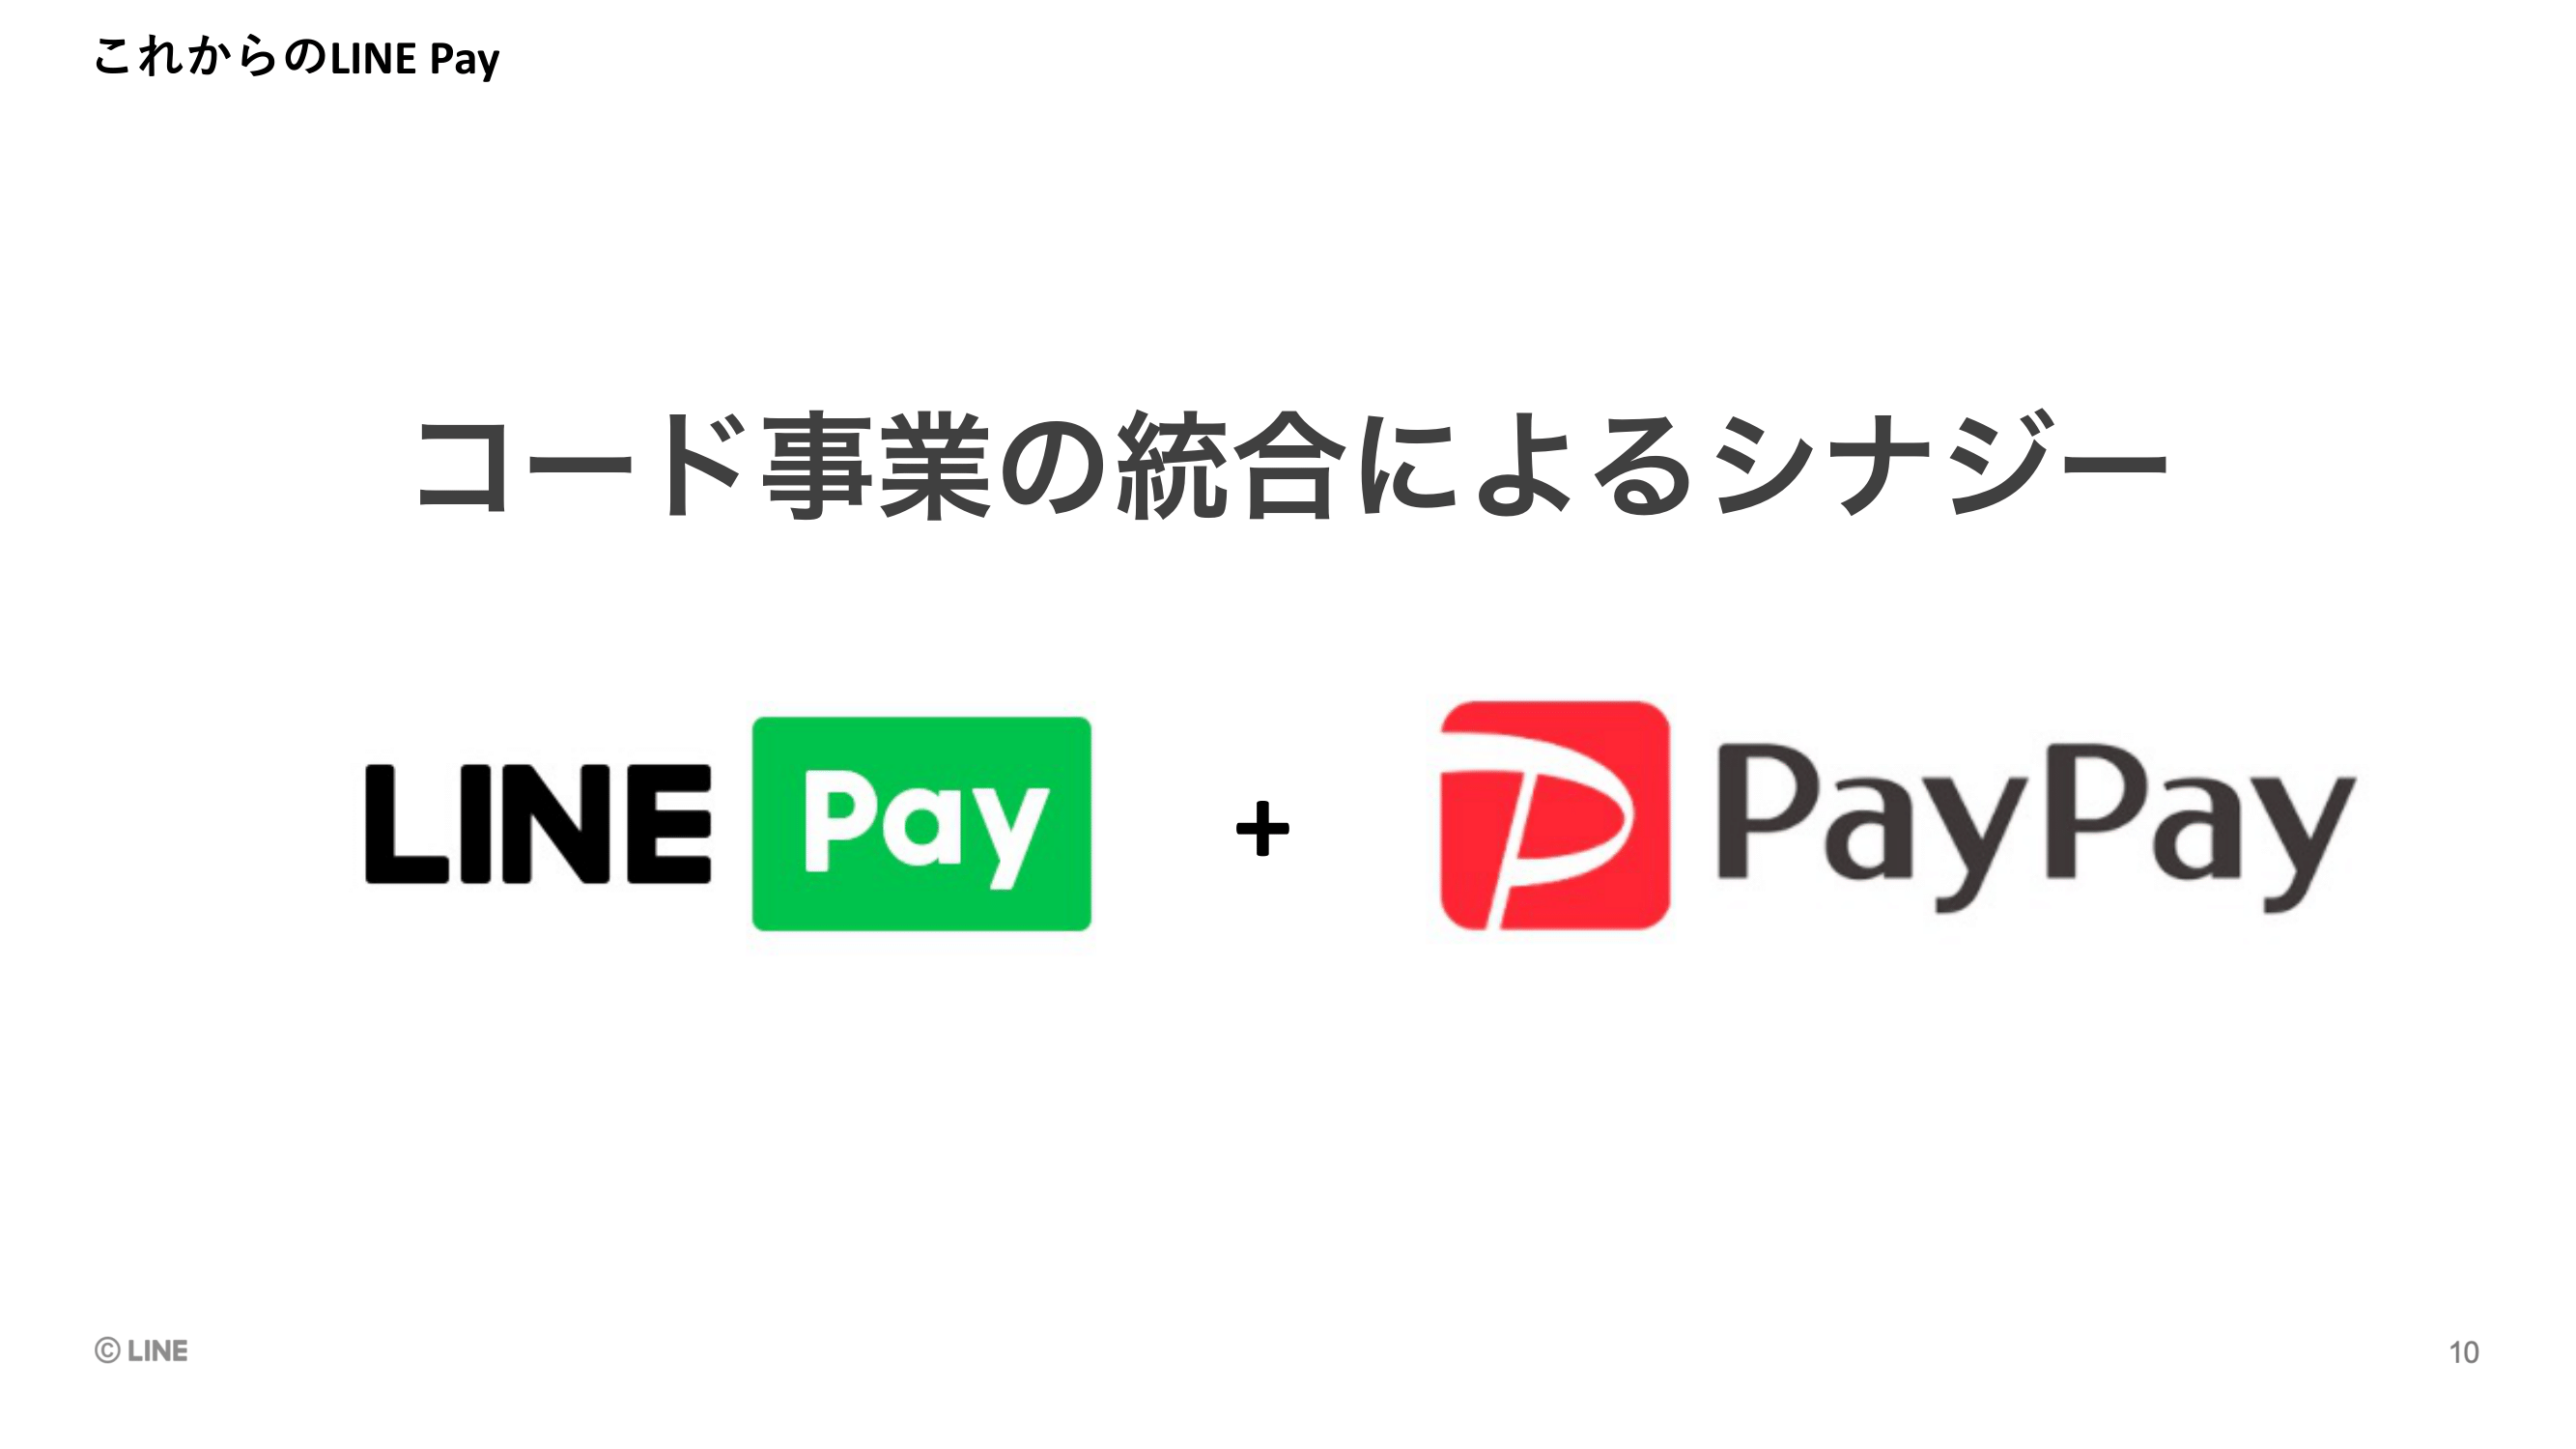 「LINE Pay + PayPay」でますます拡大　 Zホールディングスとの経営統合で忙しくなるAndroid開発